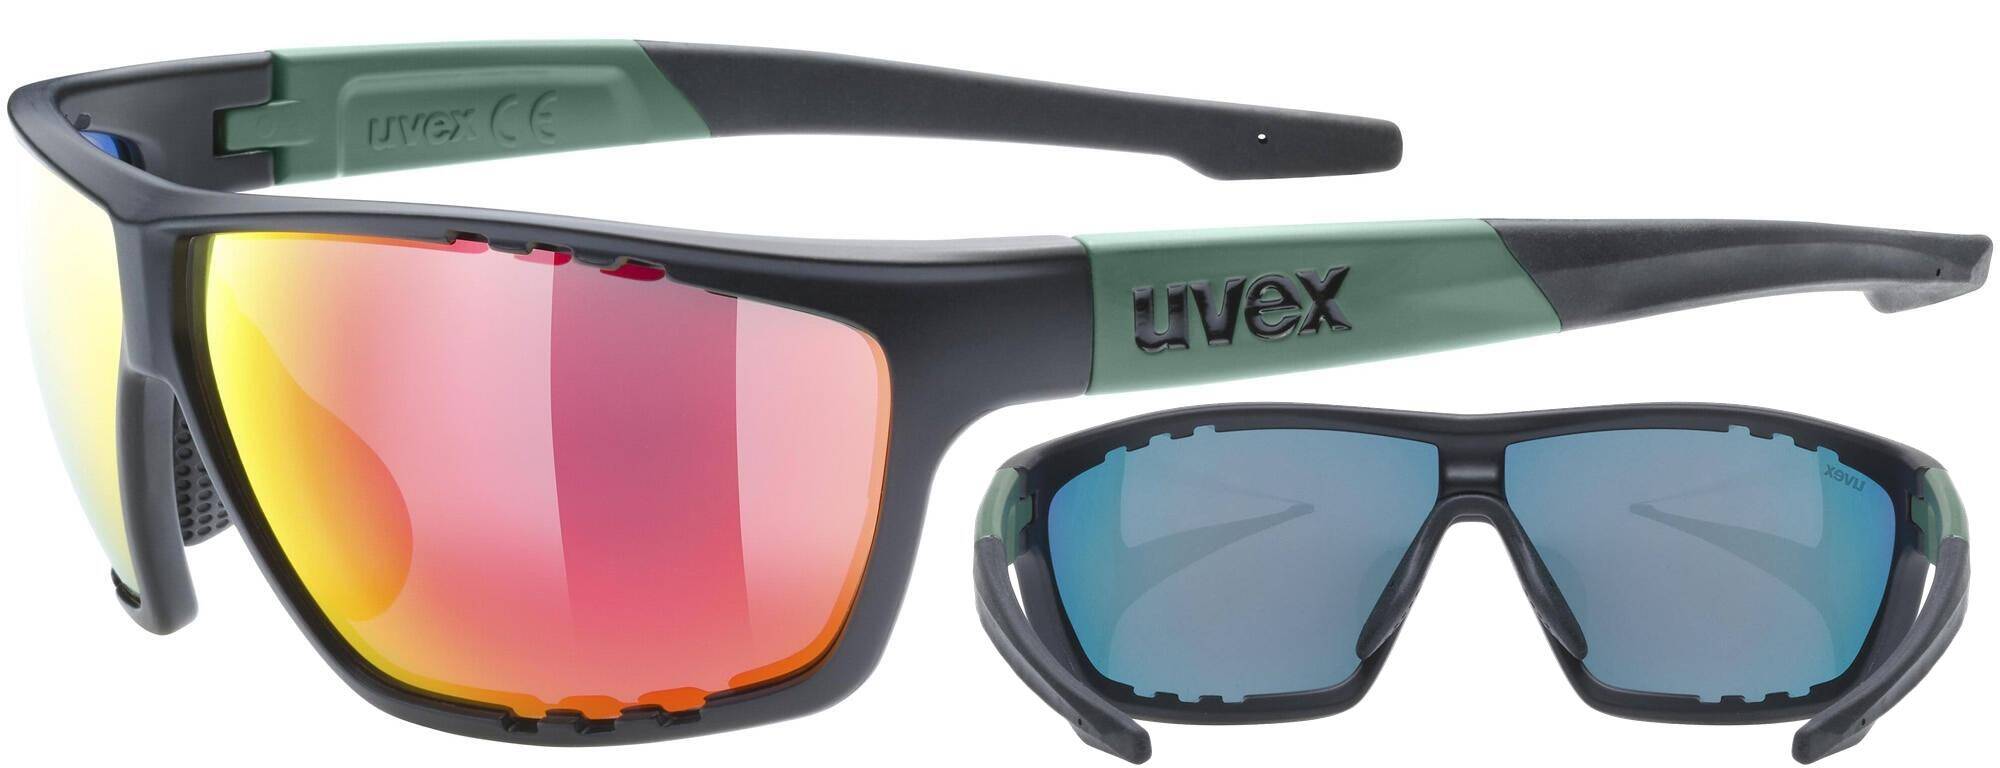 Okulary Uvex Sportstyle 706 czarno-ziel (Zdjęcie 1)